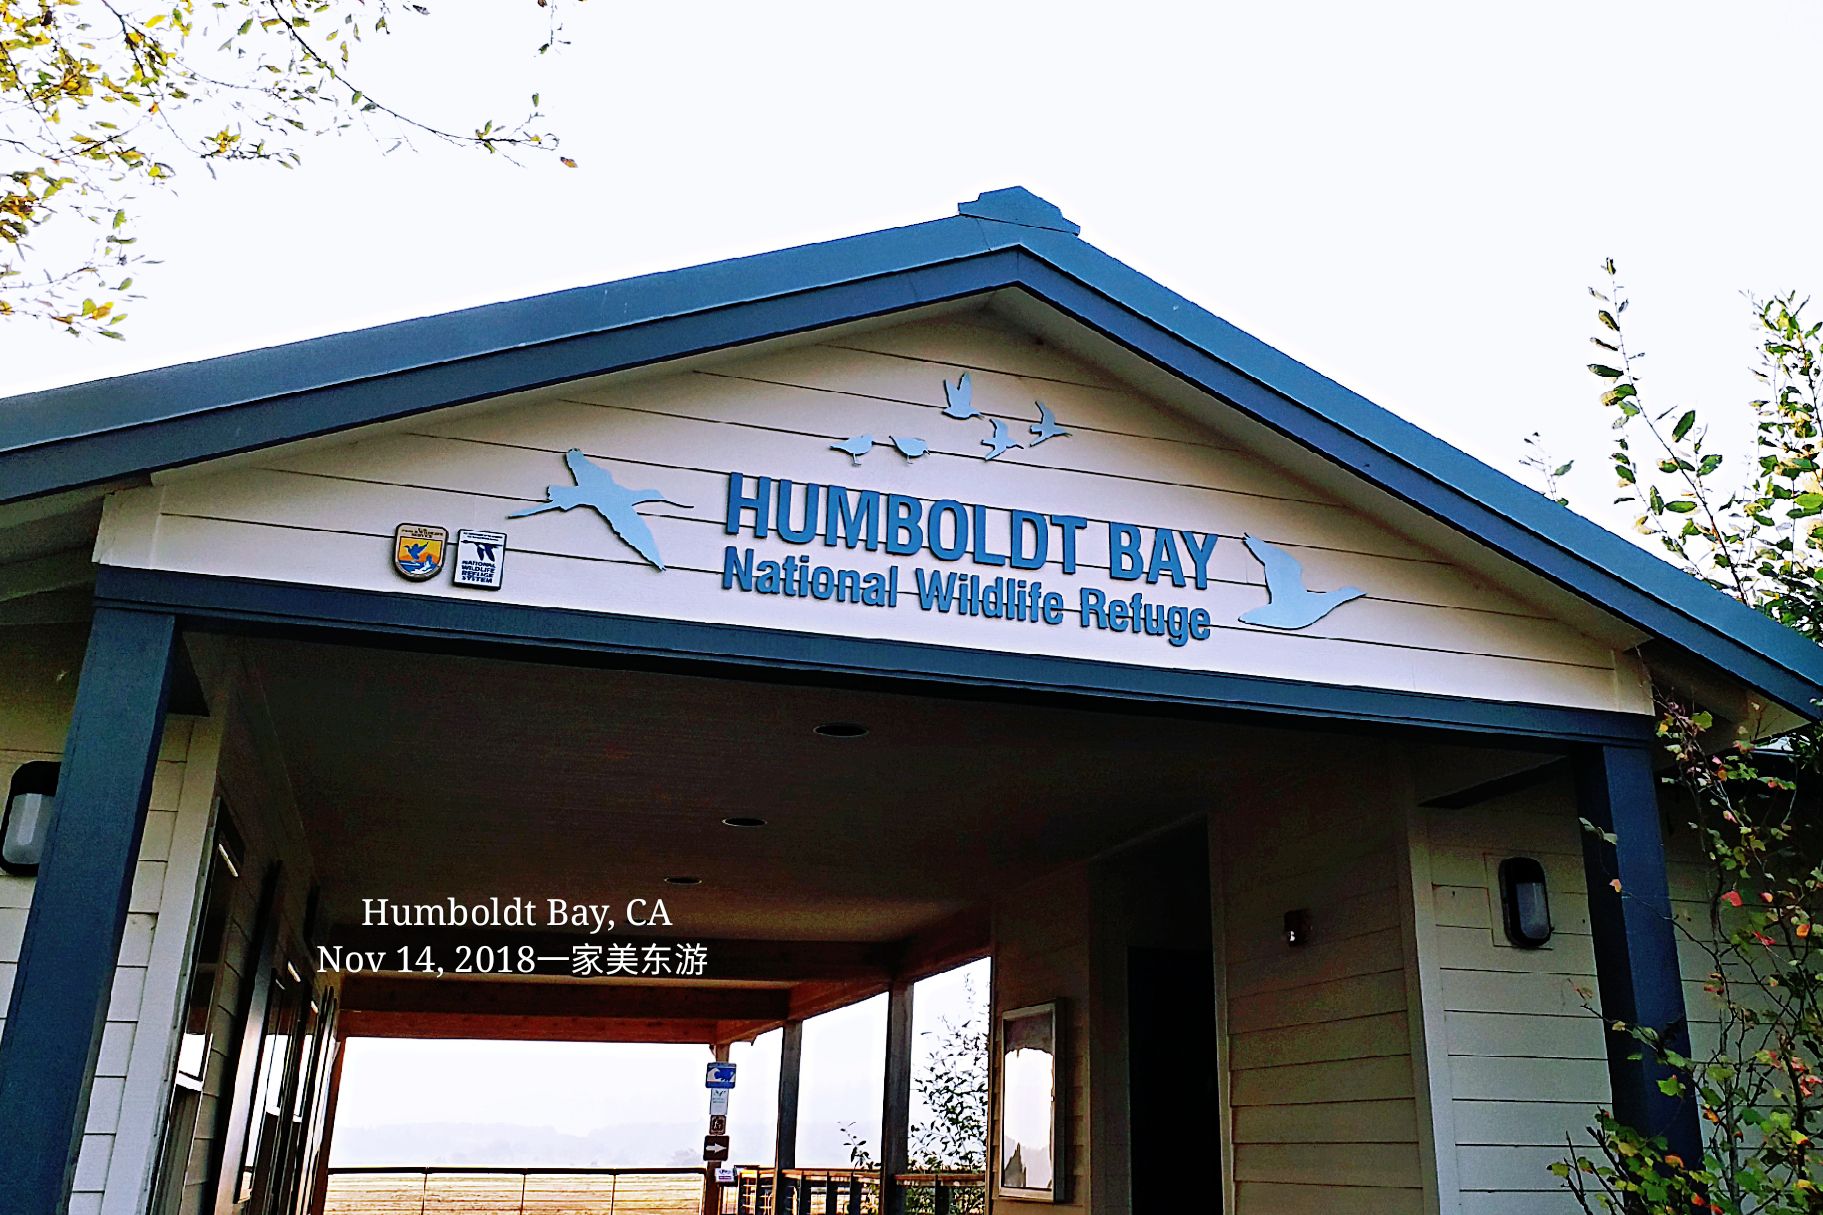 Nov 14, 2018 #US Highway 101 # Humboldt Bay Nation